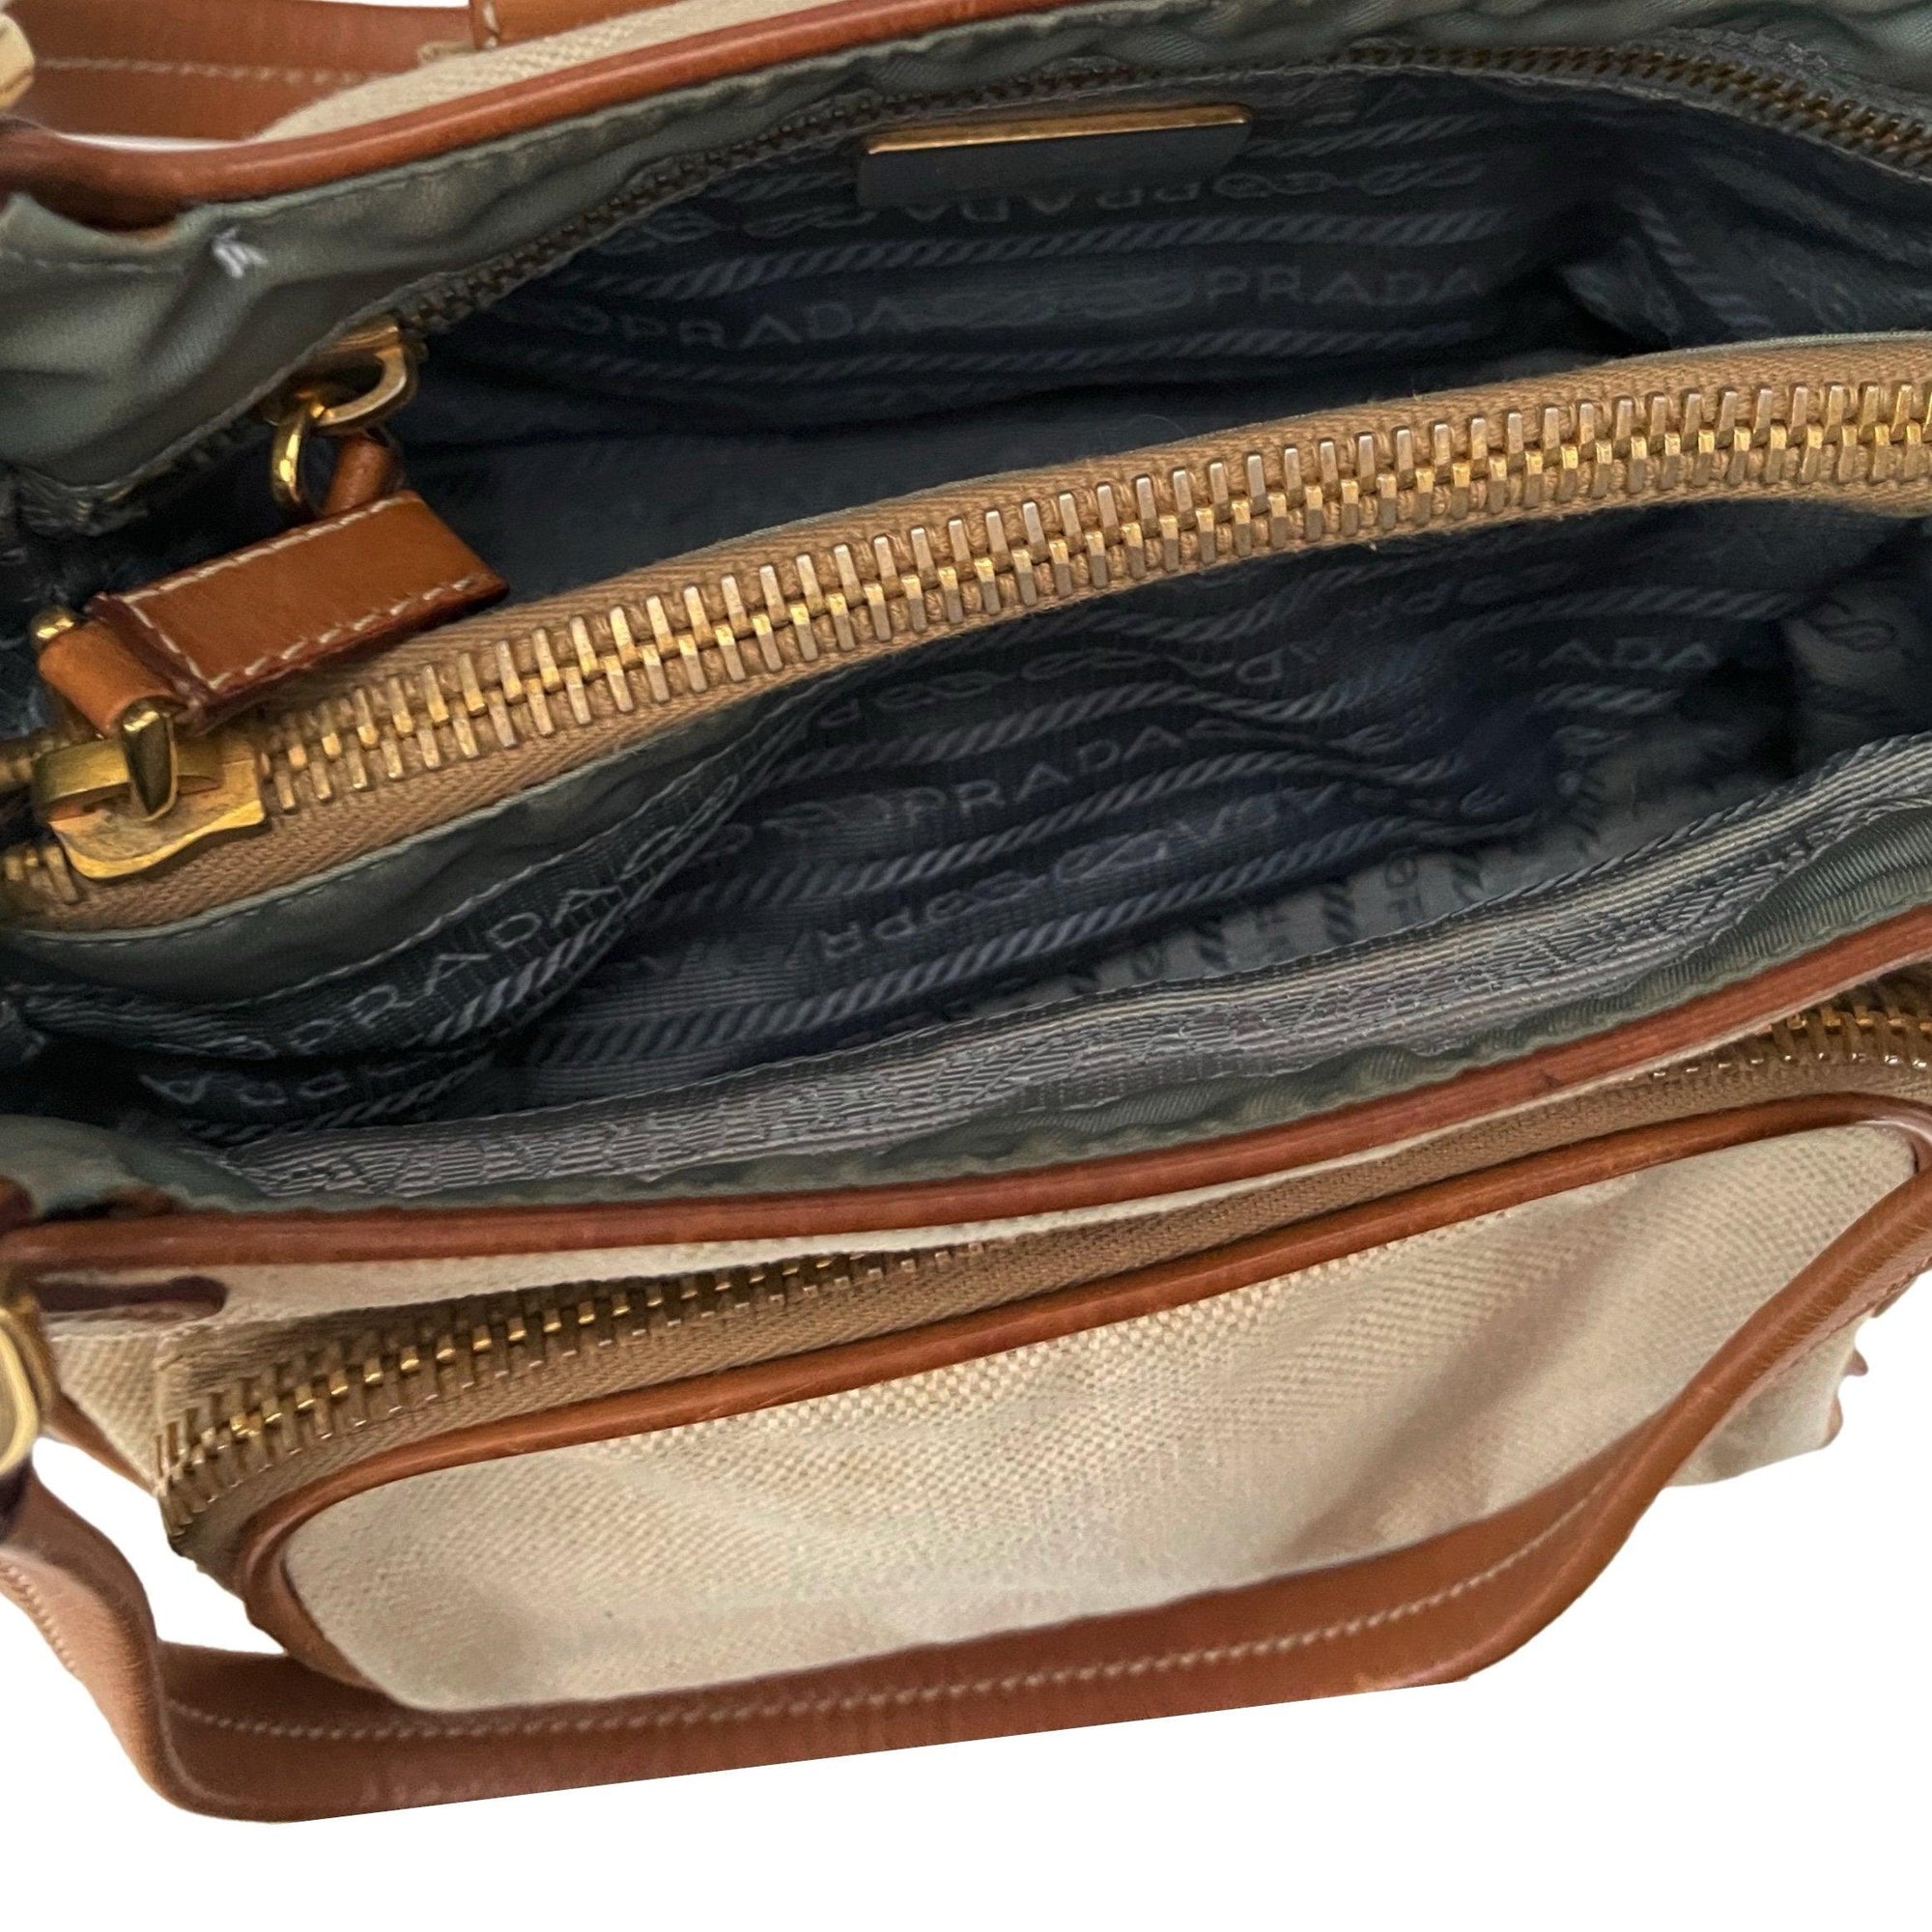 Prada Mixed Media Mini Bag - Handbags